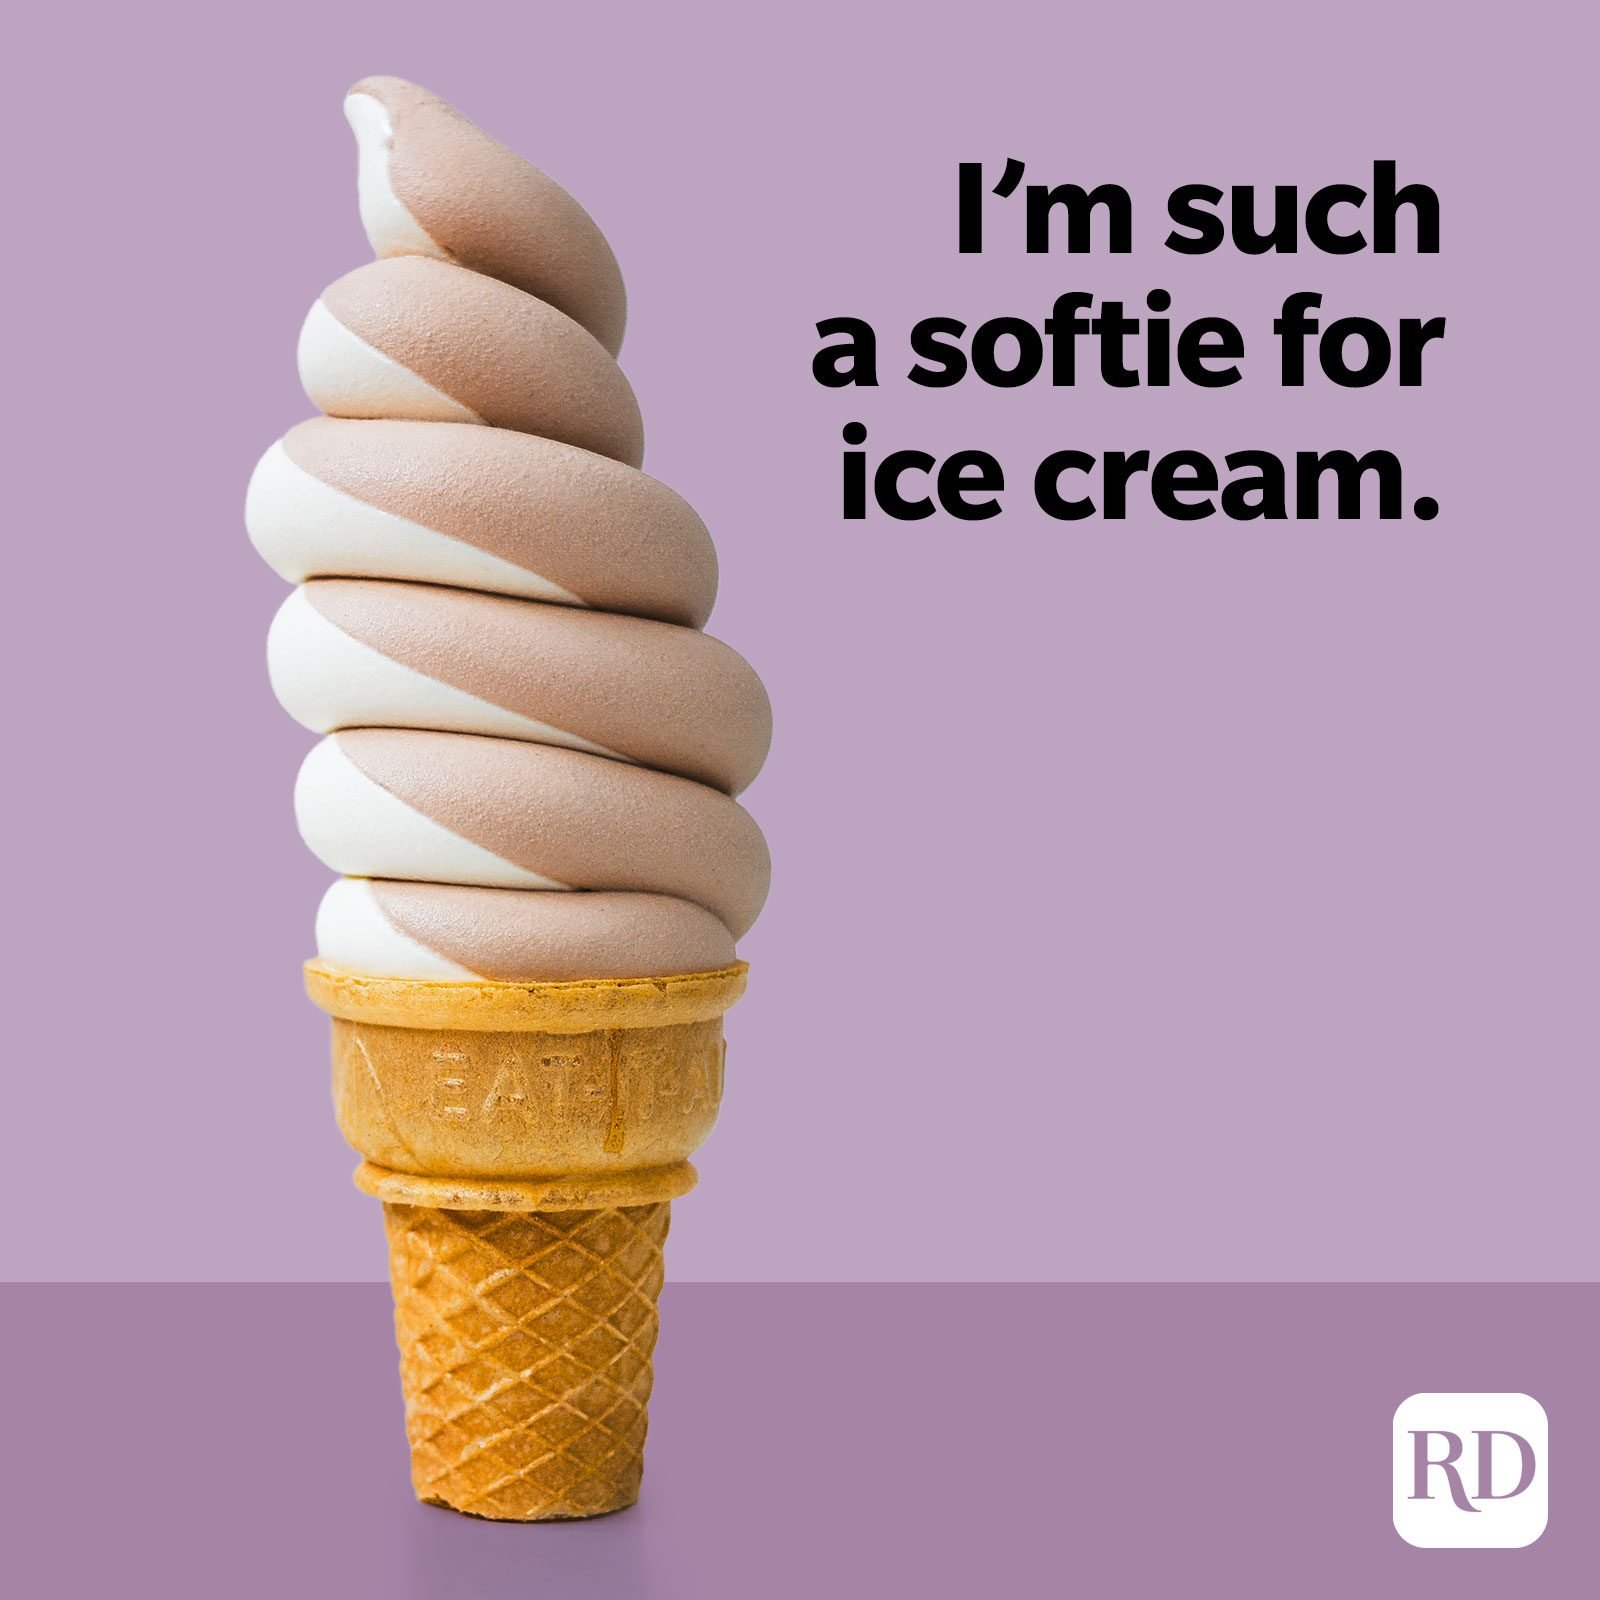 Ice Cream Puns Softie For Ice Cream